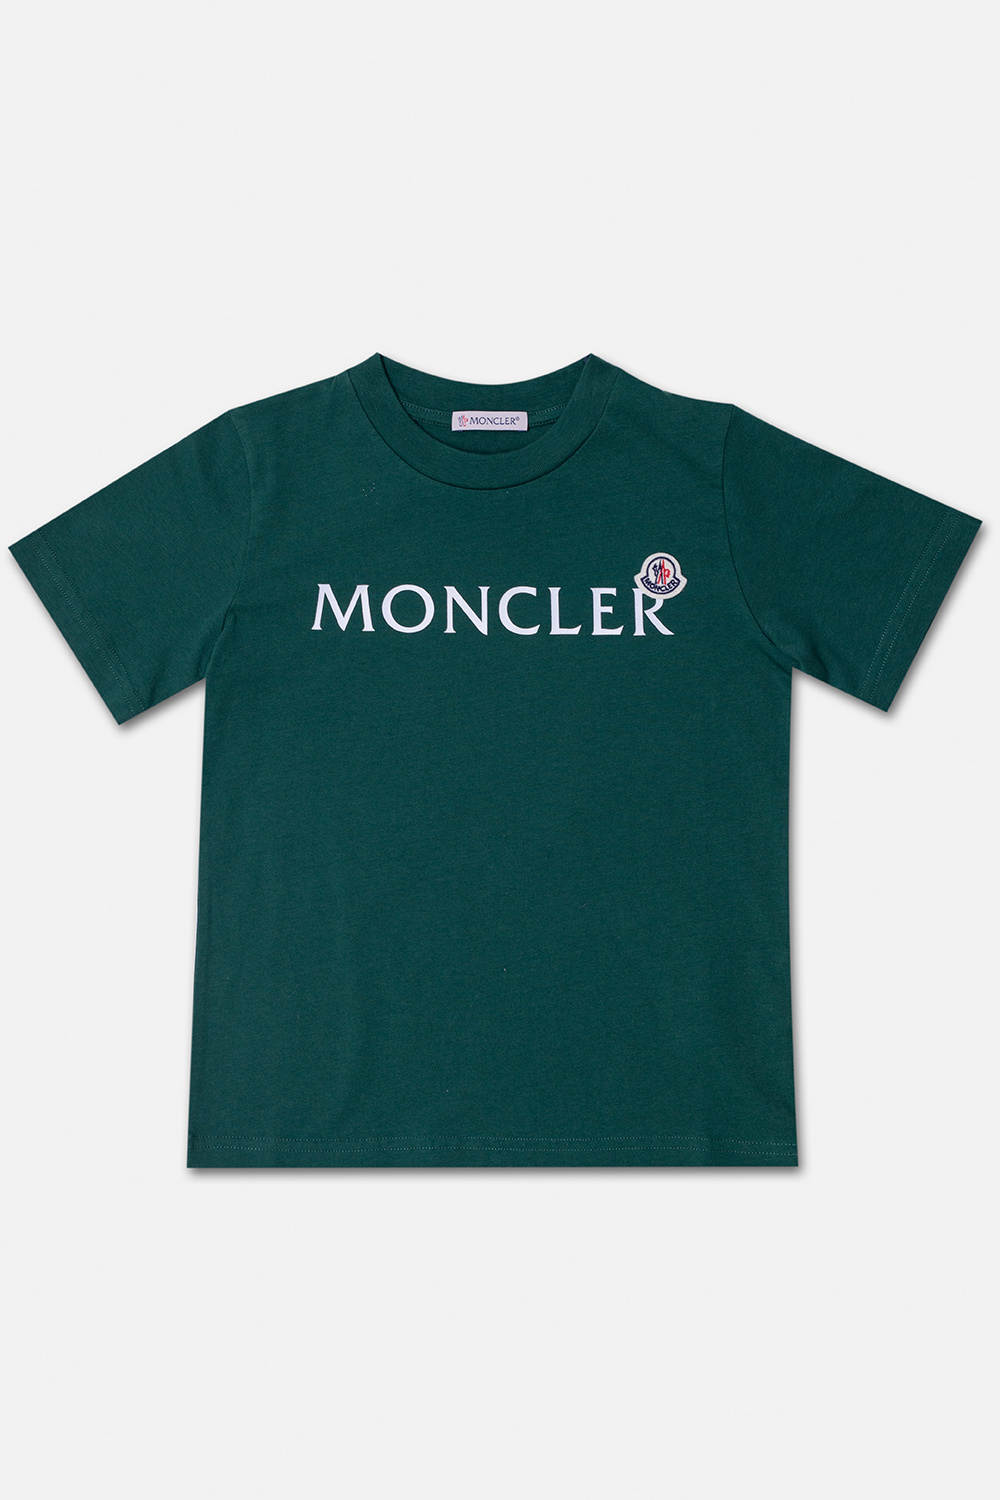 Moncler Enfant T-shirt Heritage with logo